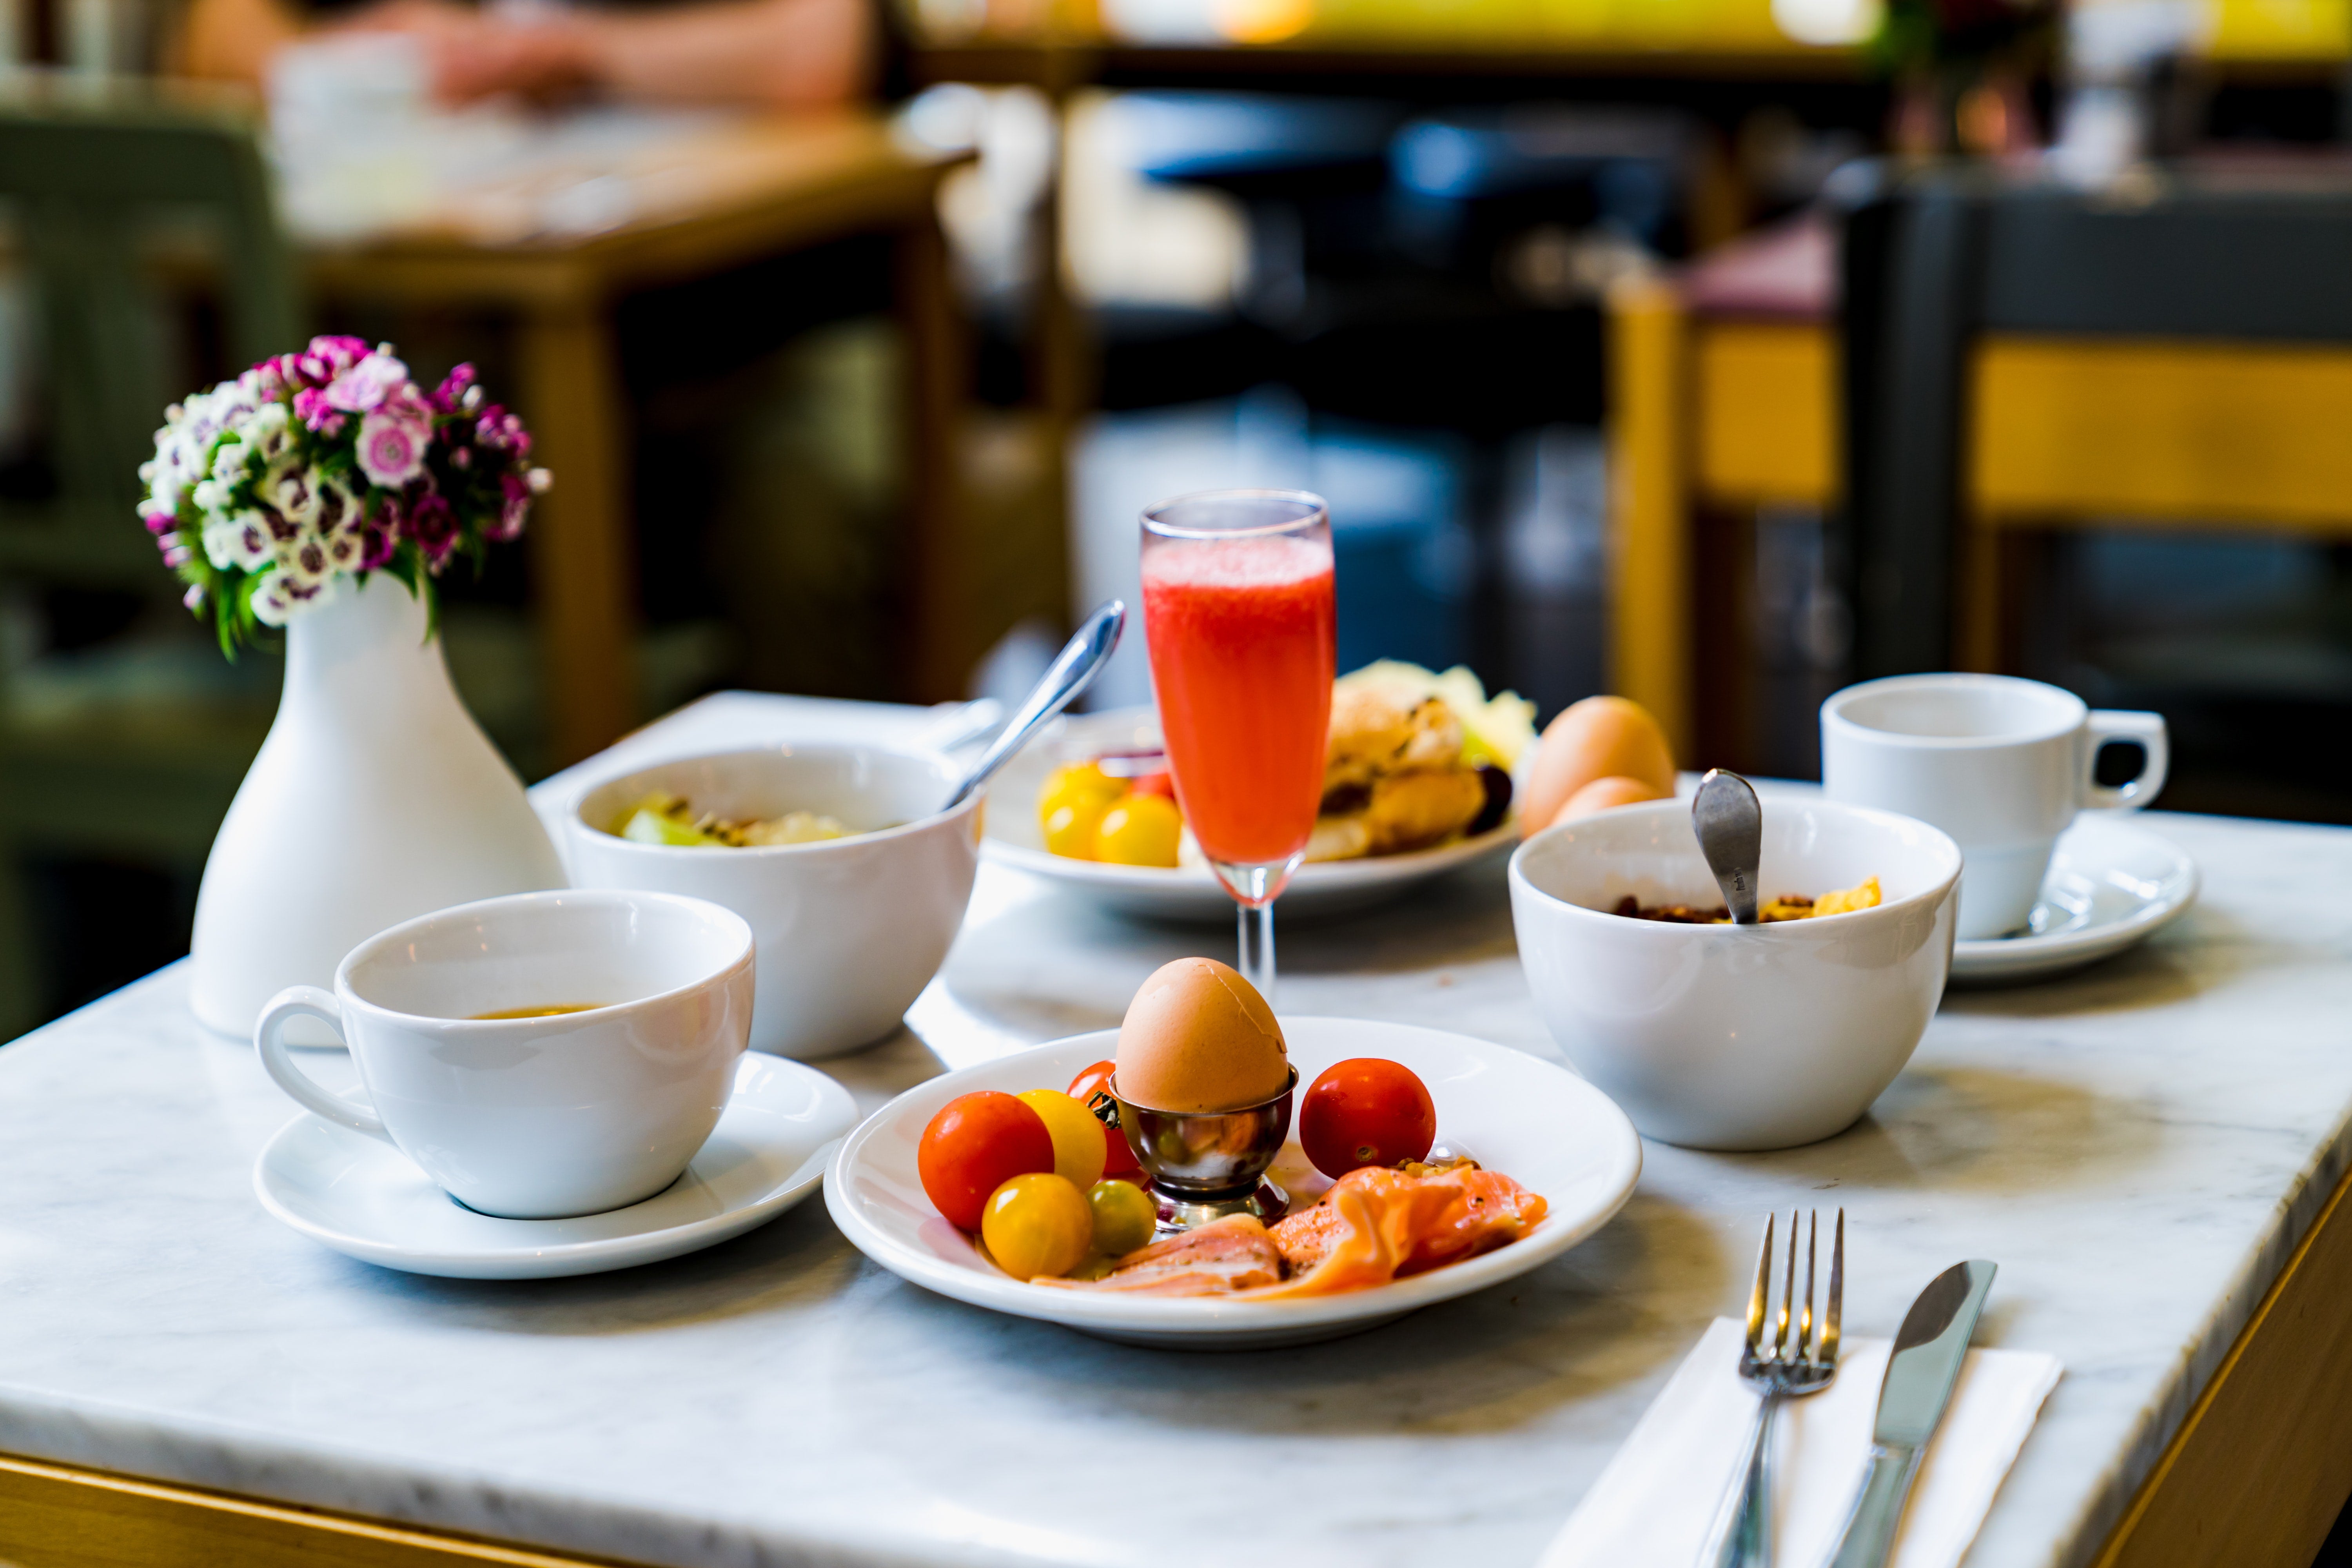 Hotel breakfast spread